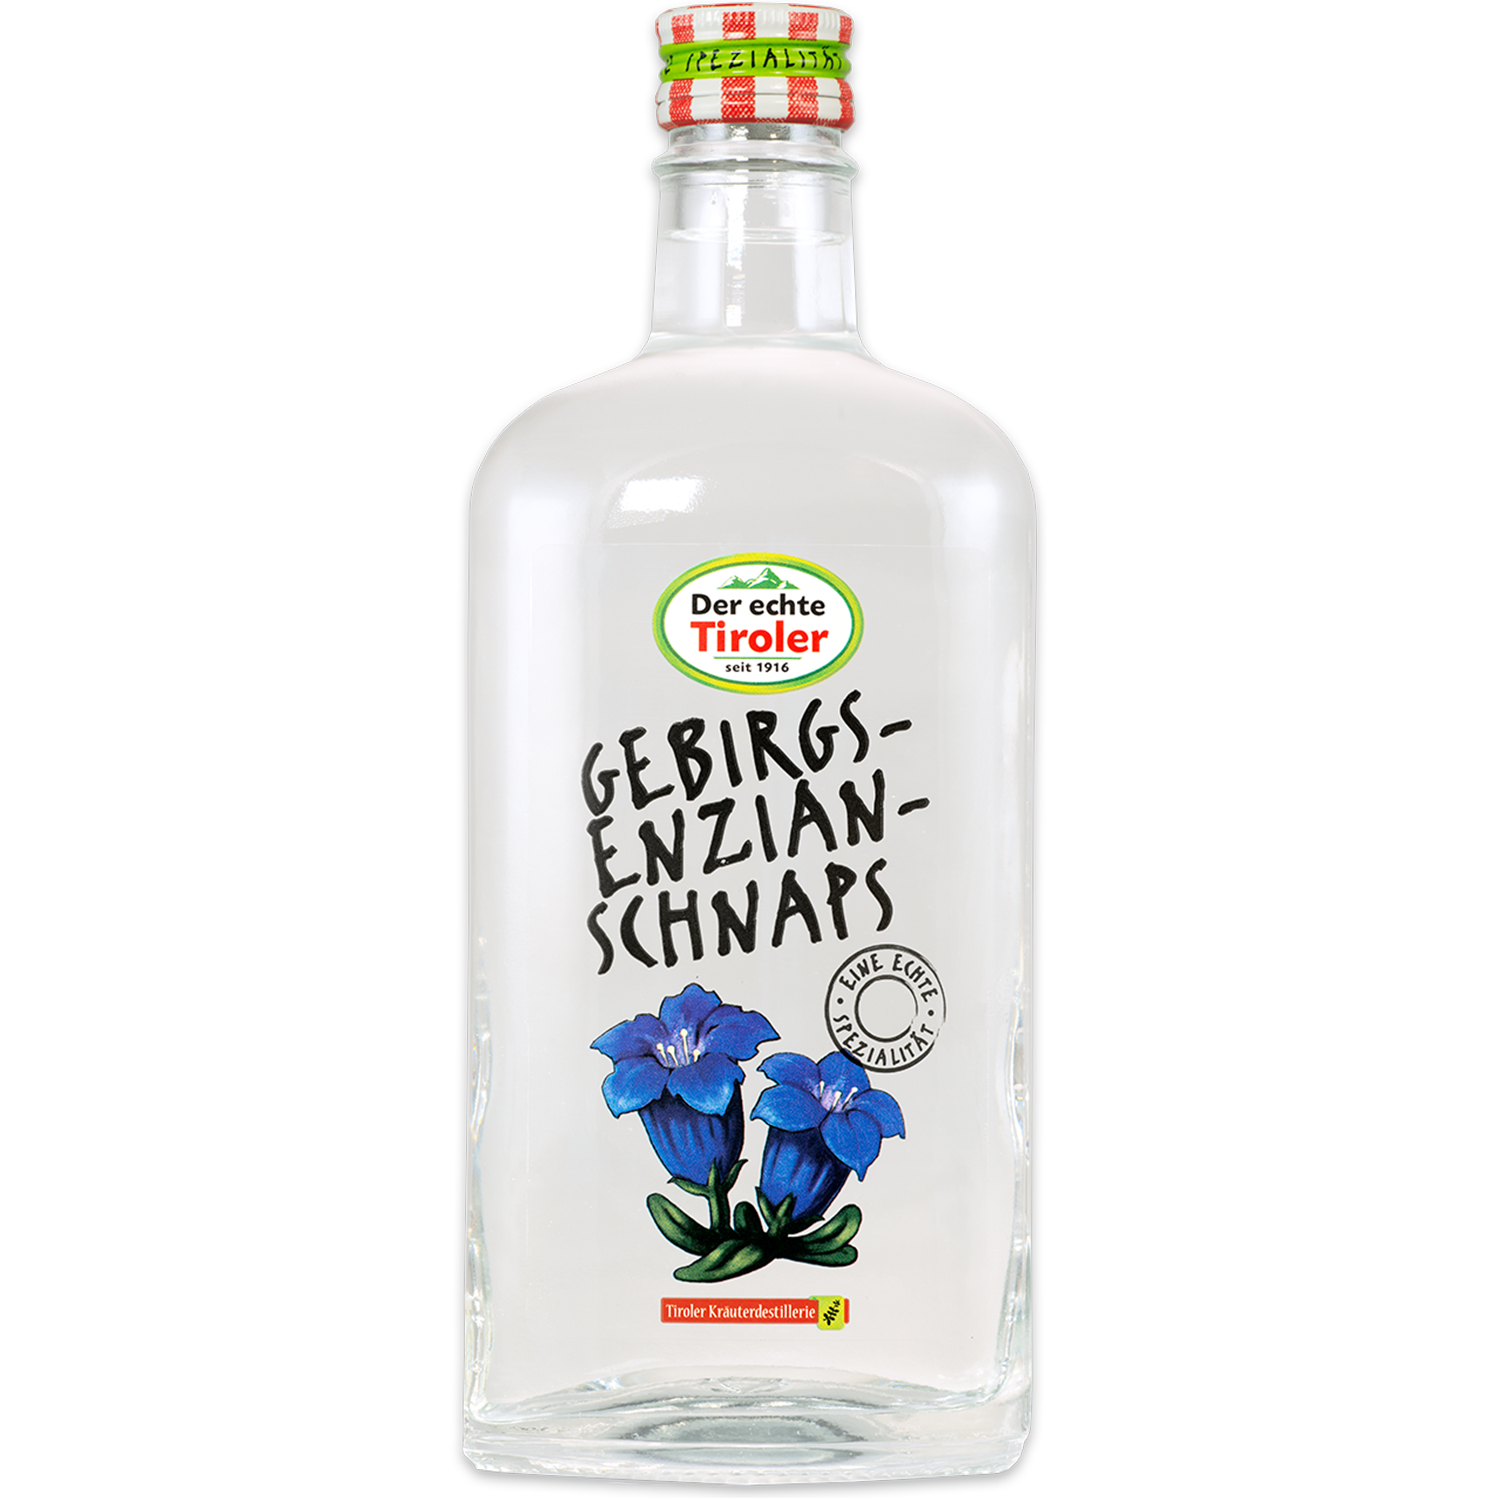 Real gentian schnapps from the Tiroler Kräuterdestillerie